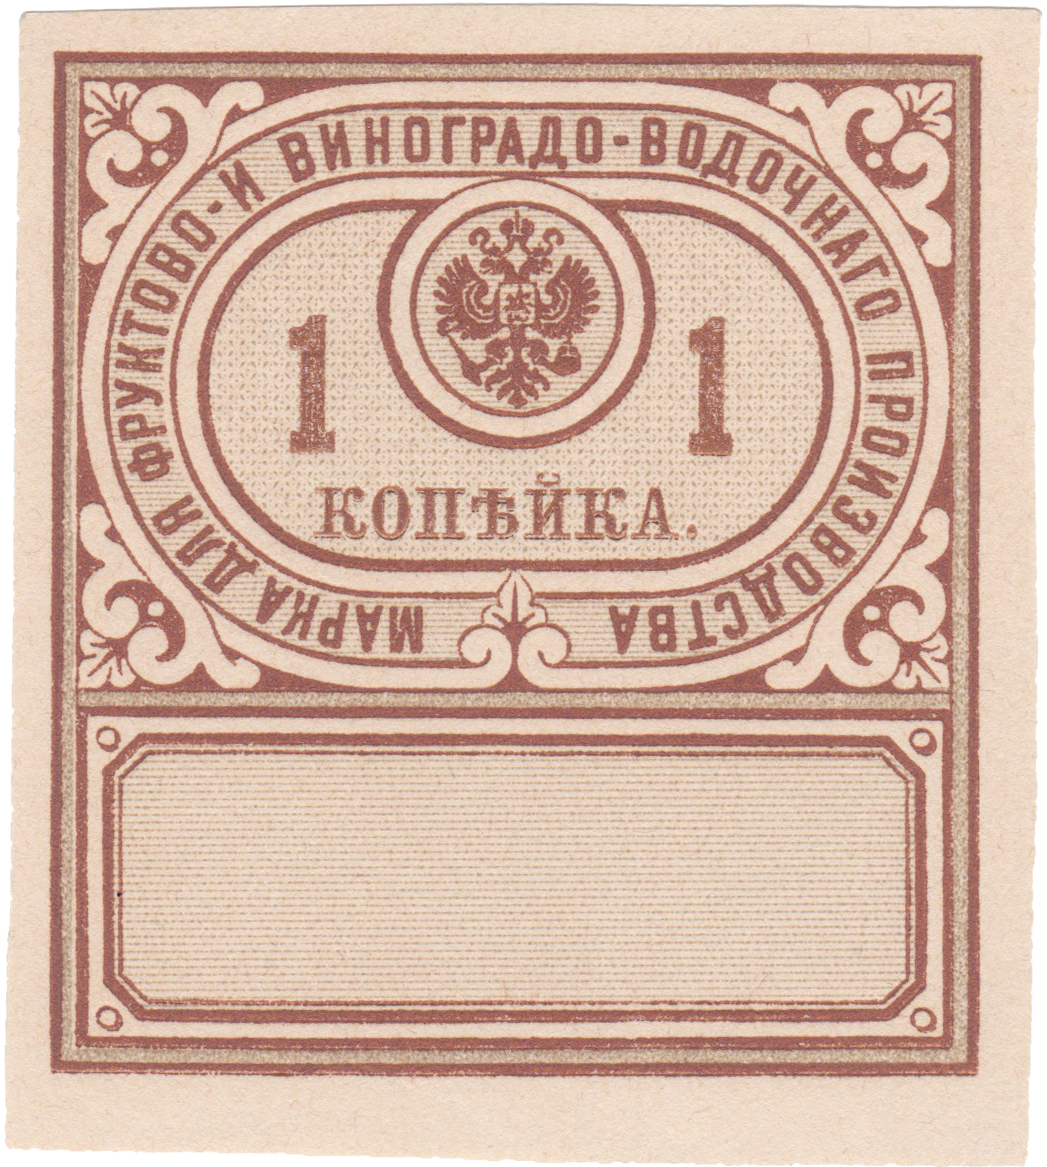 Акцизная марка фруктово- и виноградо - водочного производства 1 Копейка 1890 год. Министерство финансов Российской империи